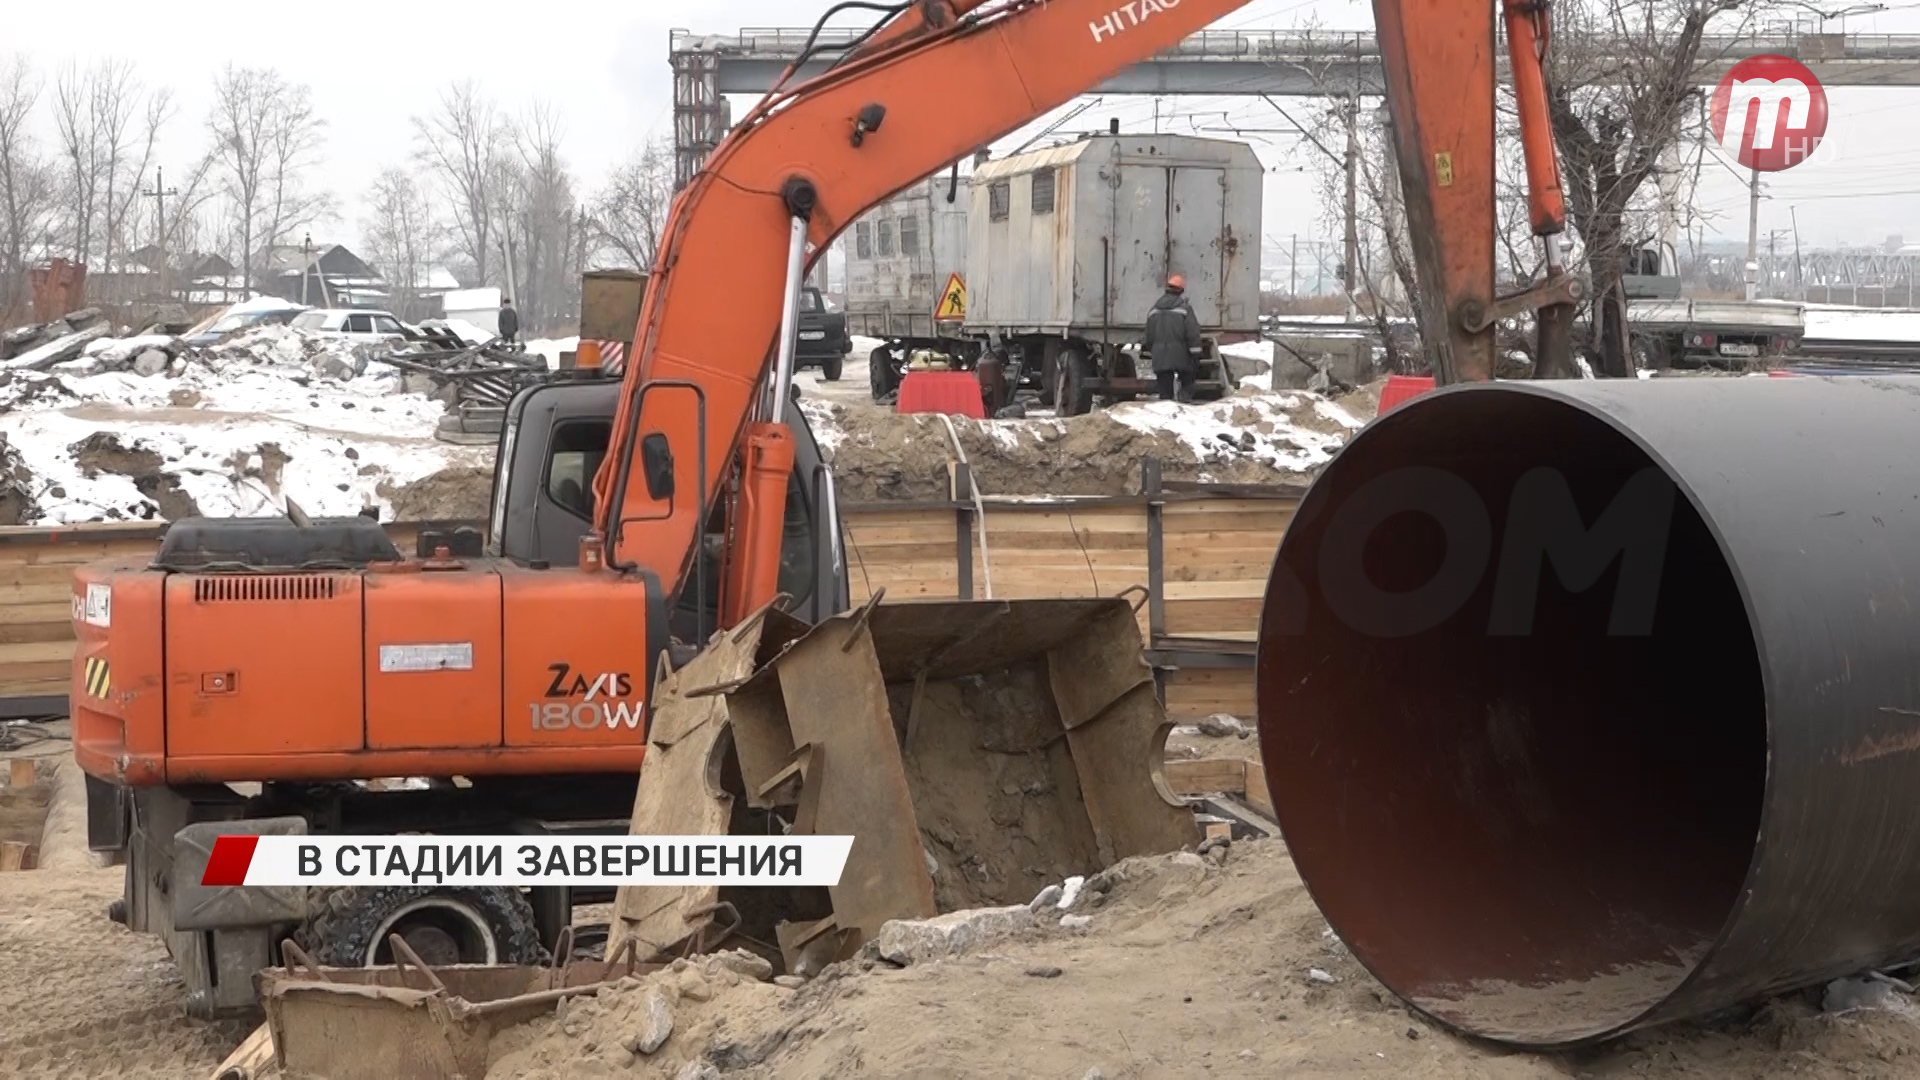 В Октябрьском районе близится к завершению большая реконструкция аварийного канализационного коллектора